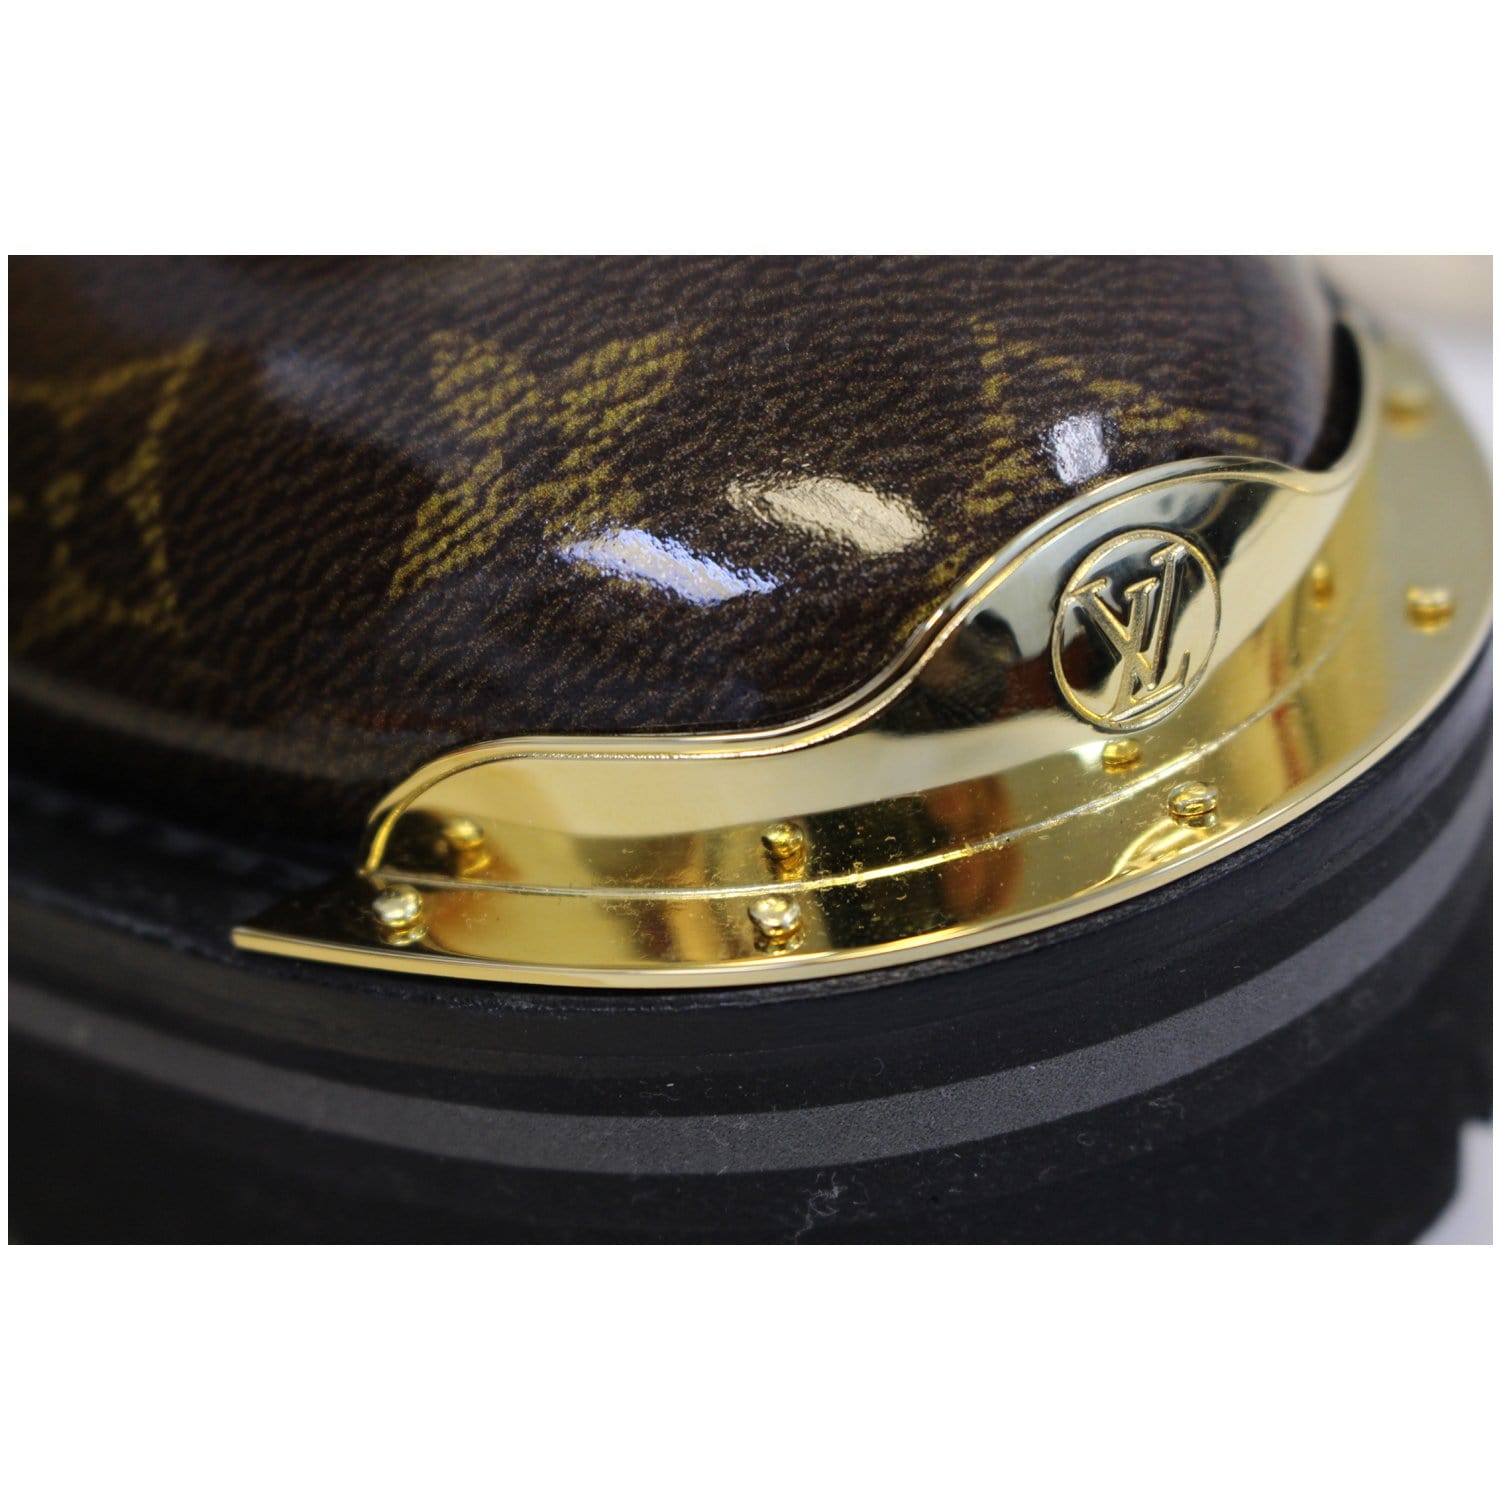 Louis Vuitton Glazed Monogram Outland Lace-Up Boots Black Cloth ref.785822  - Joli Closet